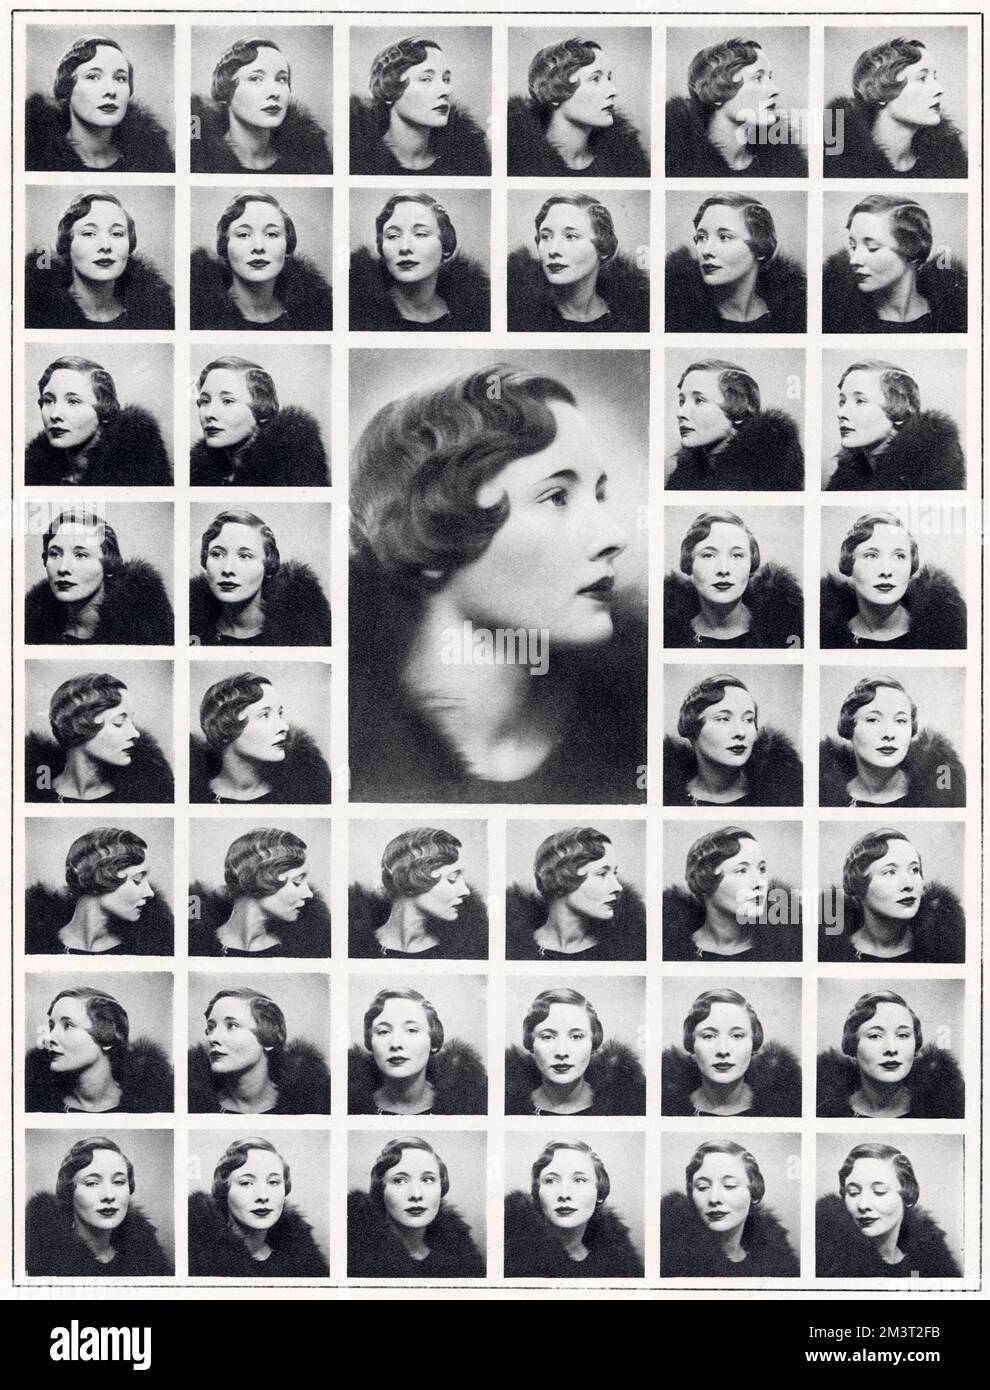 Edythe A. Baker (1899-1971), amerikanische Boogie-Woogie-Pianistin, Ehefrau von Gerard ('Pop') d'Erlanger. Hervorragendes Wiederholungsfoto-Porträt von ihr. Stockfoto